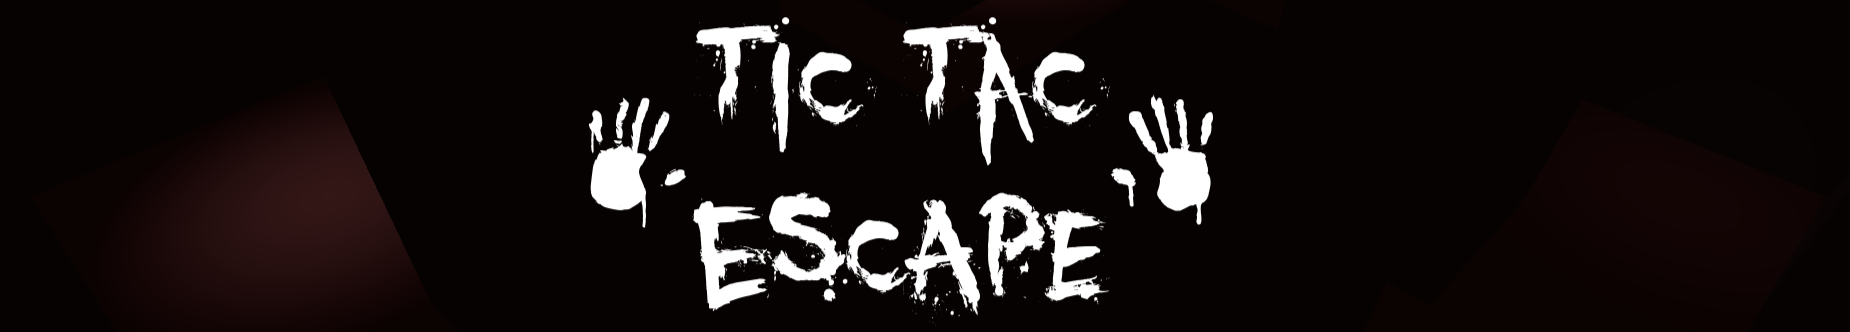 Tic Tac Escape v2 (Unreal Engine)